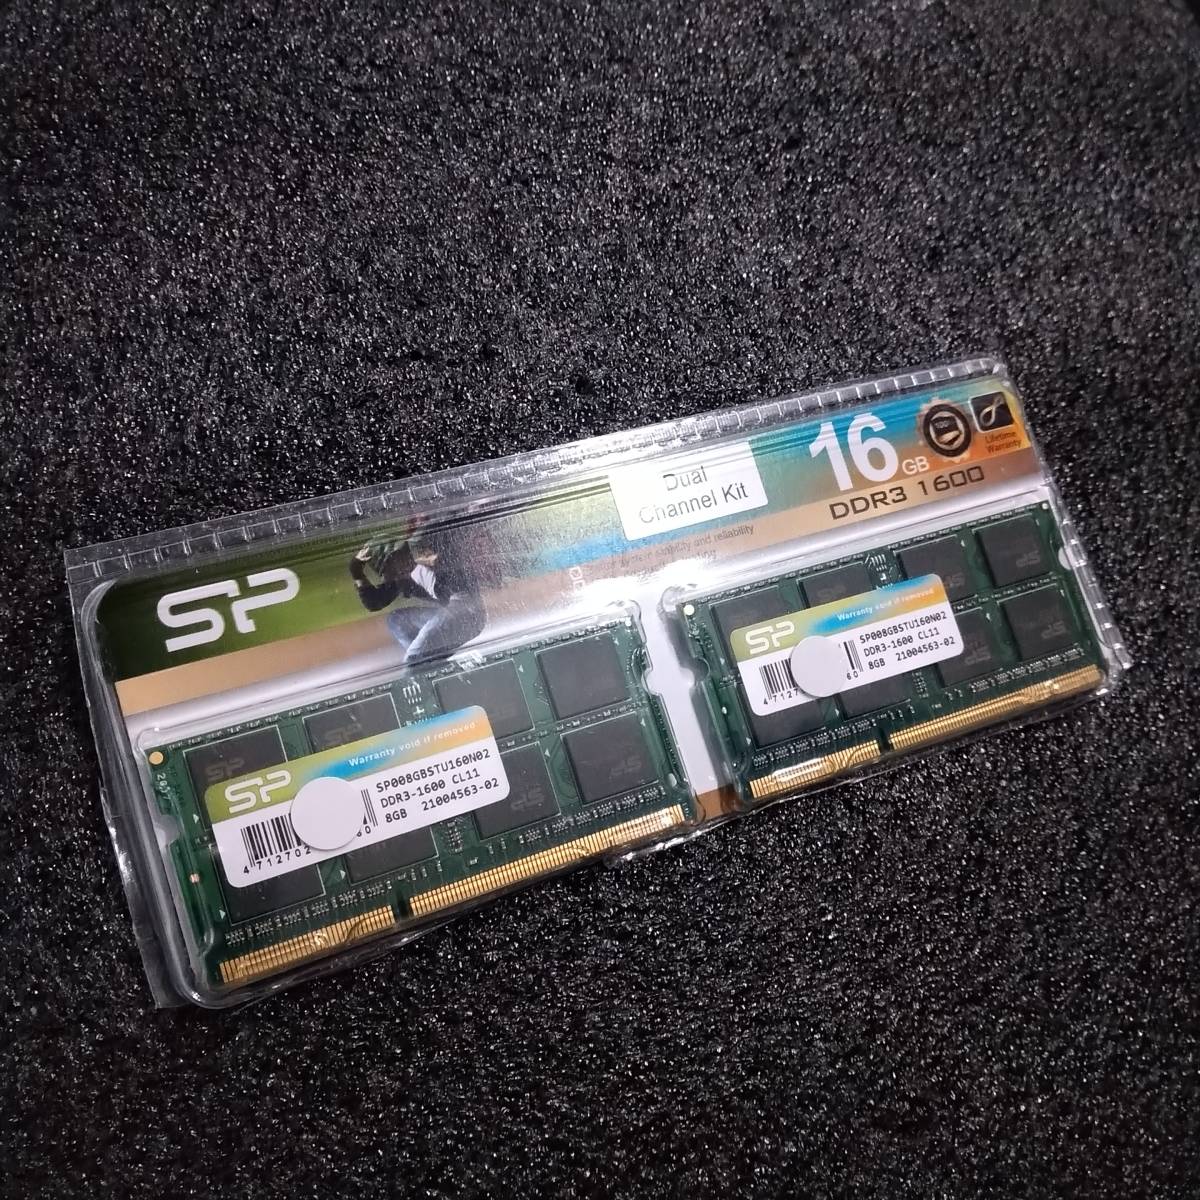 【中古】DDR3 SO-DIMM 16GB(8GB2枚組) シリコンパワー SP008GBSTU160N02 [DDR3-1600 PC3-12800 1.5V]